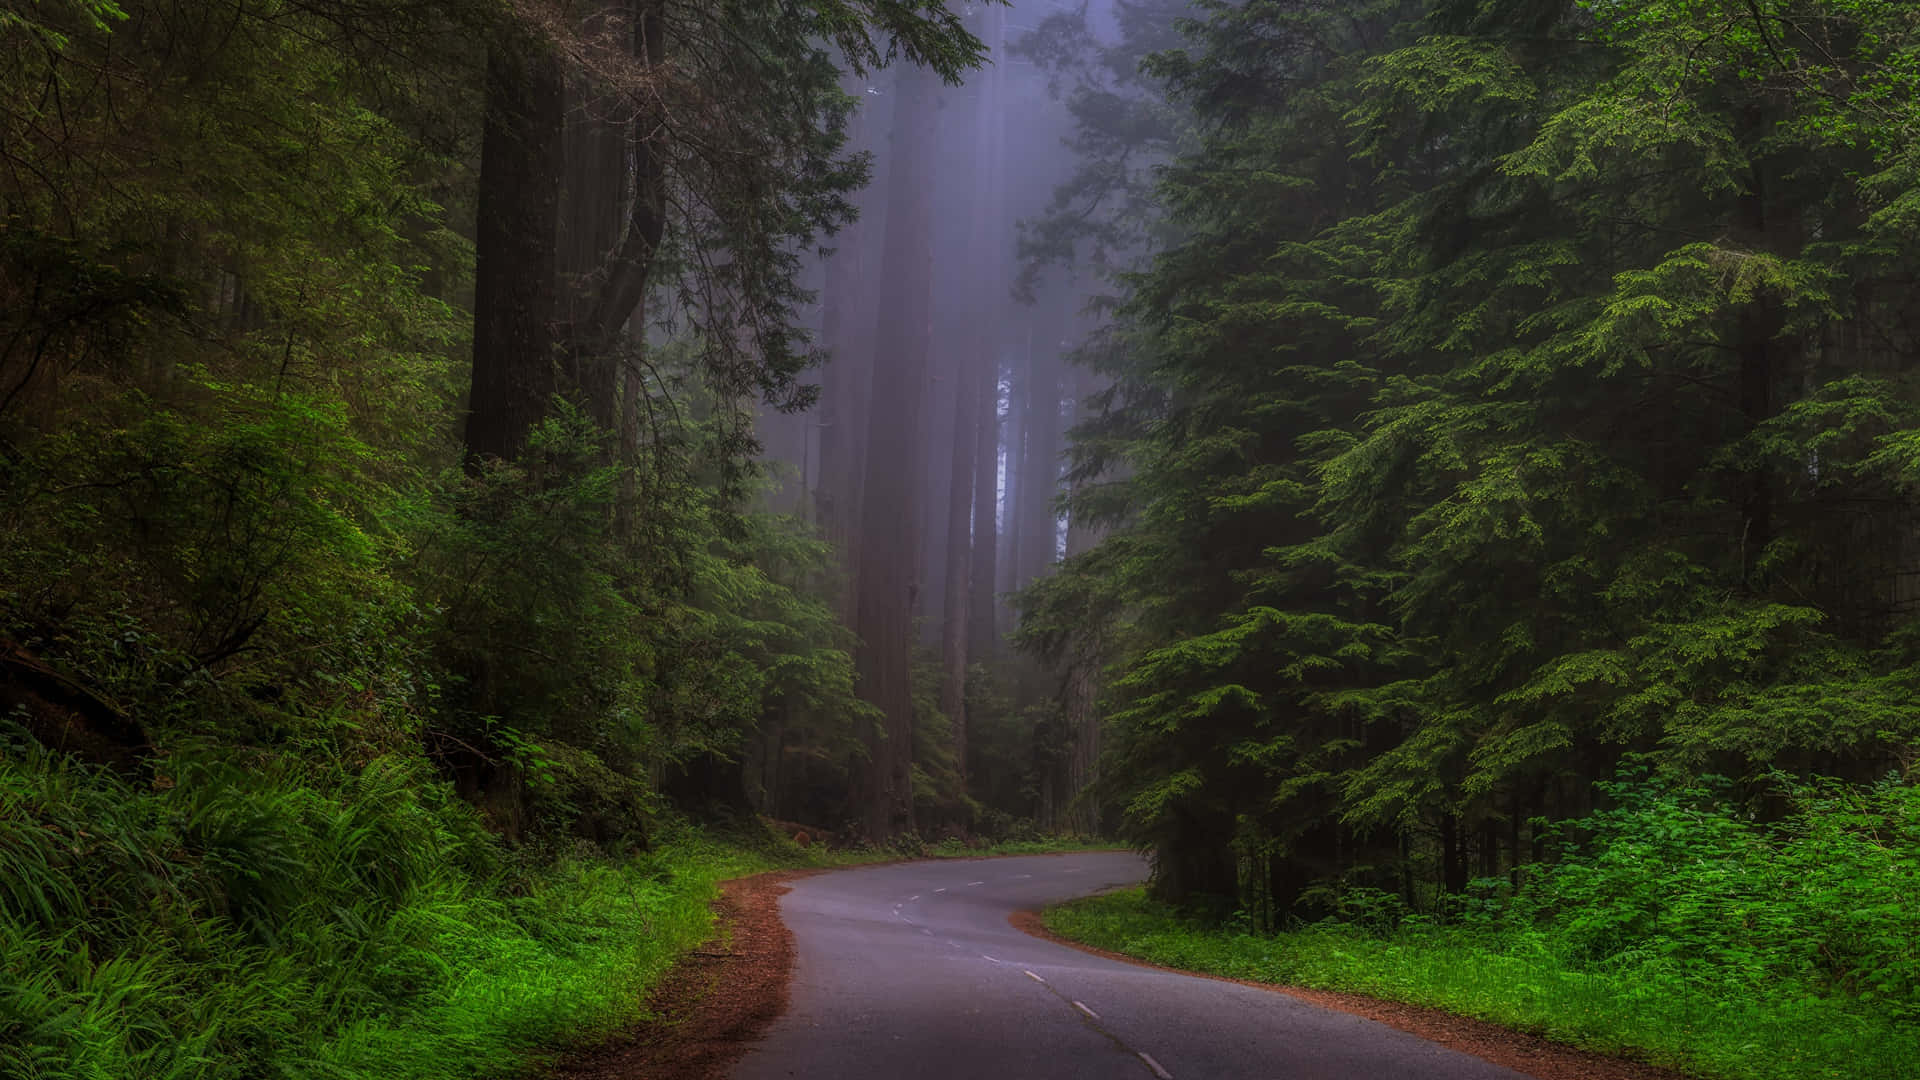 Tapet Tema: Fantastiske grønne træer og tåge fuldstændigt dækker den rustikke nationalpark Redwood. Wallpaper